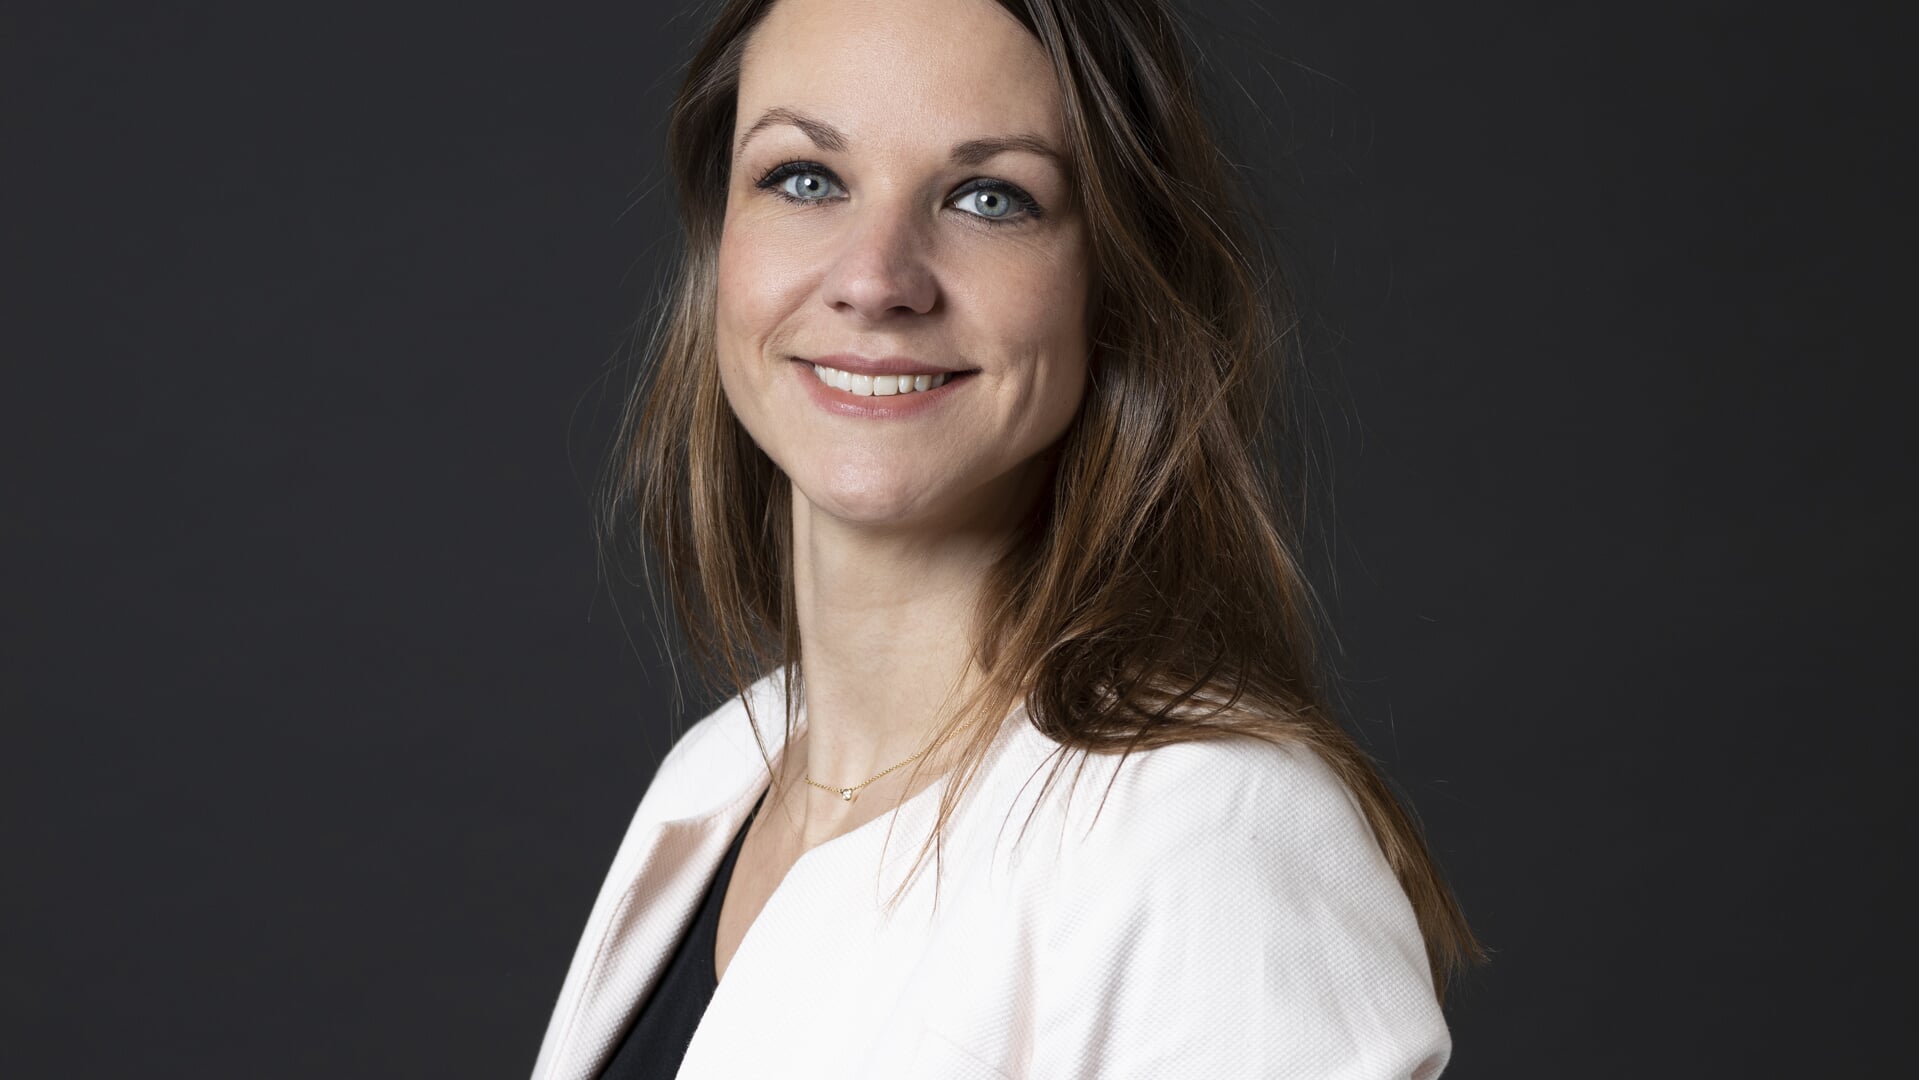 De 39-jarige Marijke Kasius is CEO van PQR, raadslid, moeder en directeur van The Learning Network.